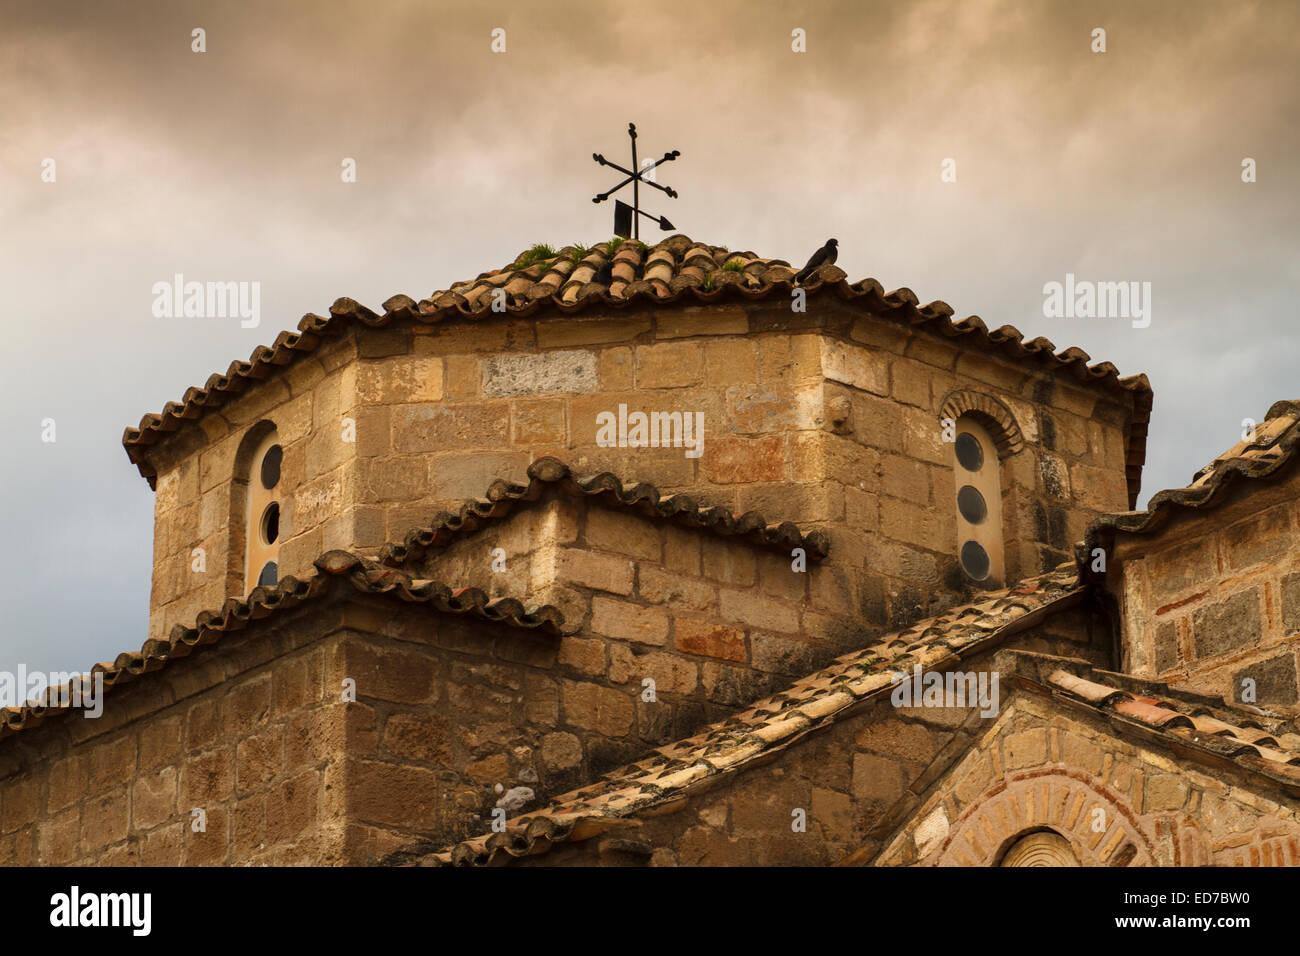 The dome of the byzantine church of Agioi Apostoloi at Kalamata city. Messenia, Peloponnese, Greece Stock Photo